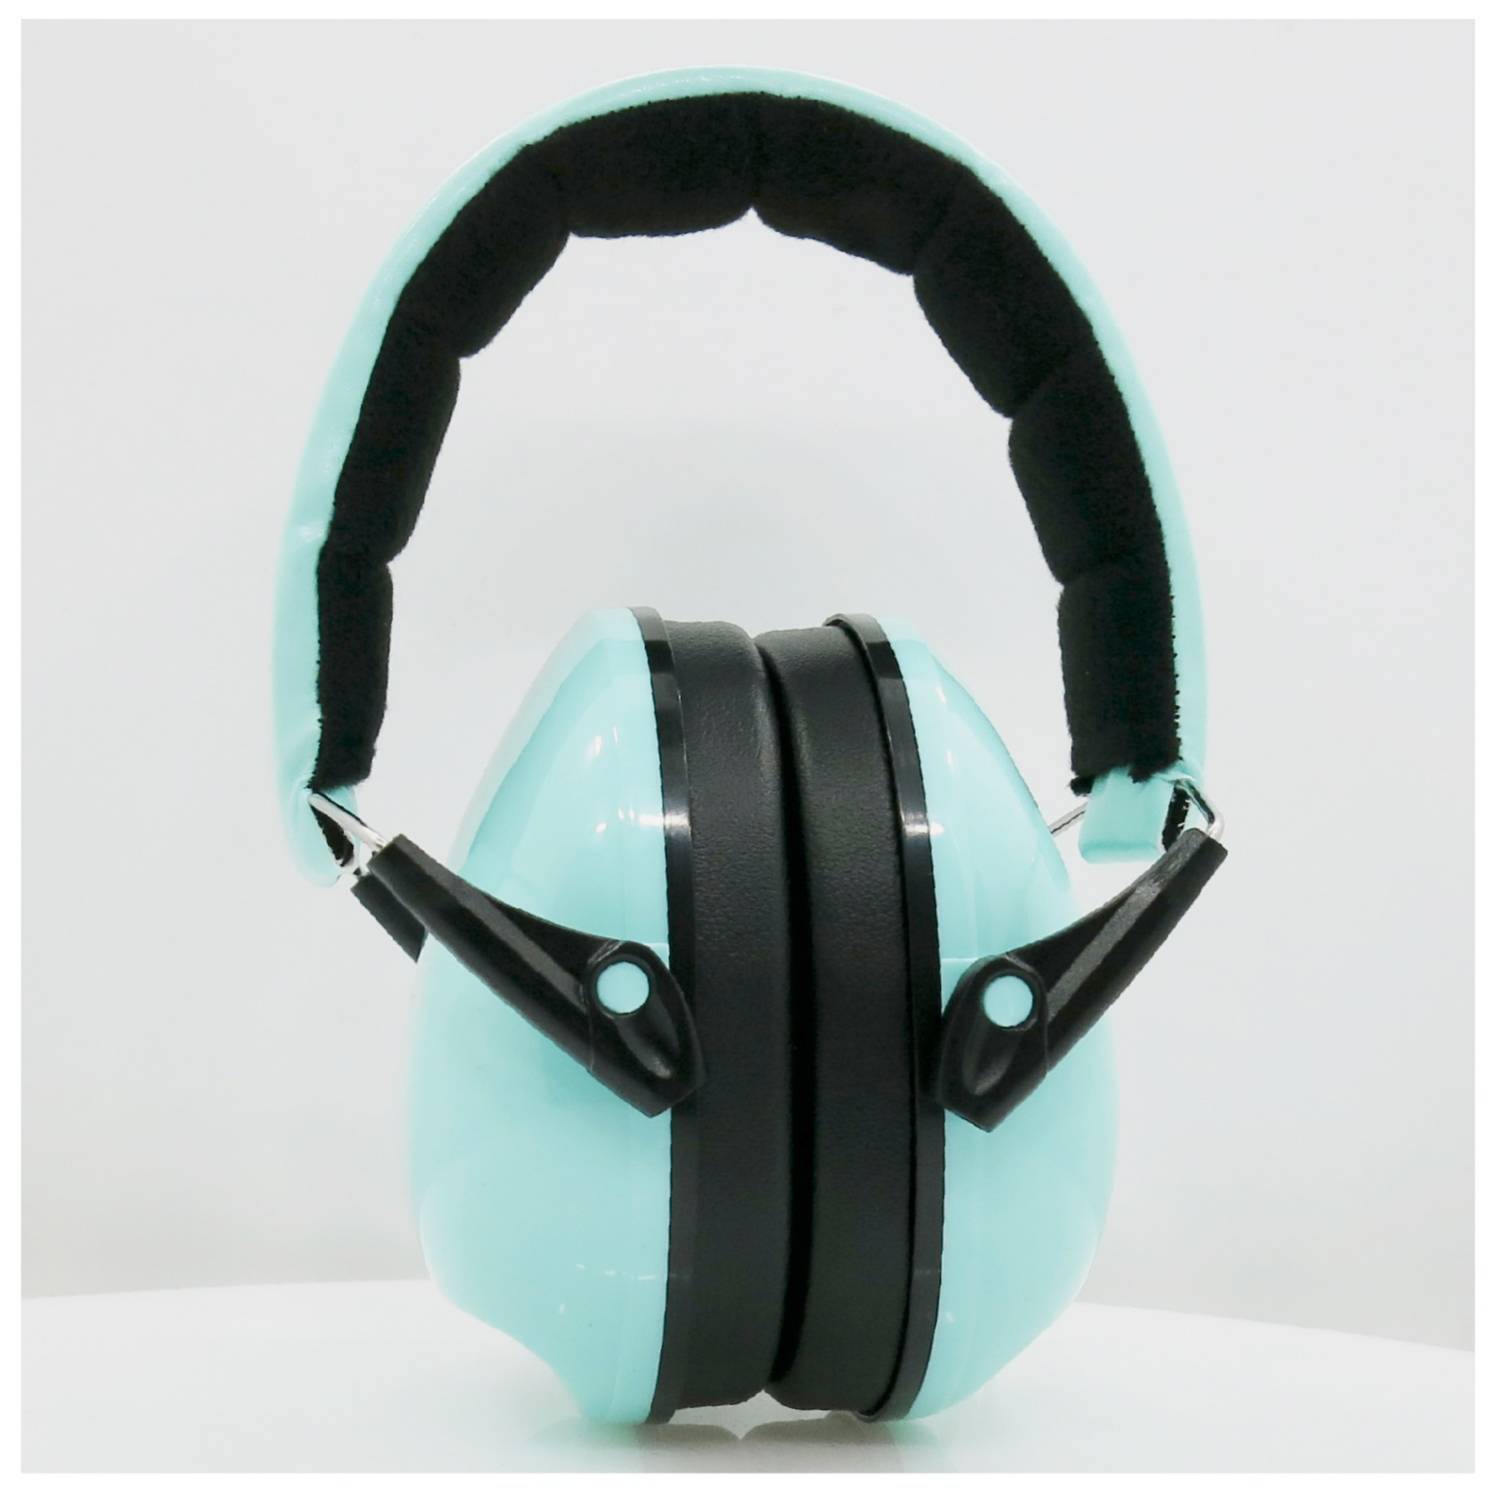 Audífono antiruido PRO ® protección auditiva niños, jóvenes y